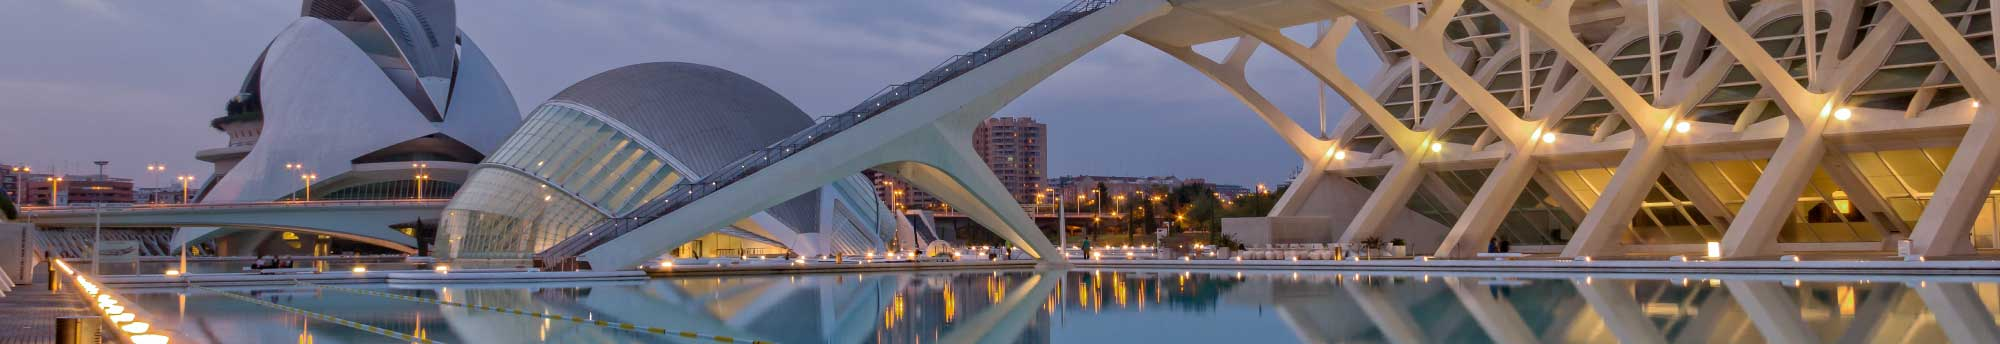 Viaje a Valencia: Ferry + Hotel